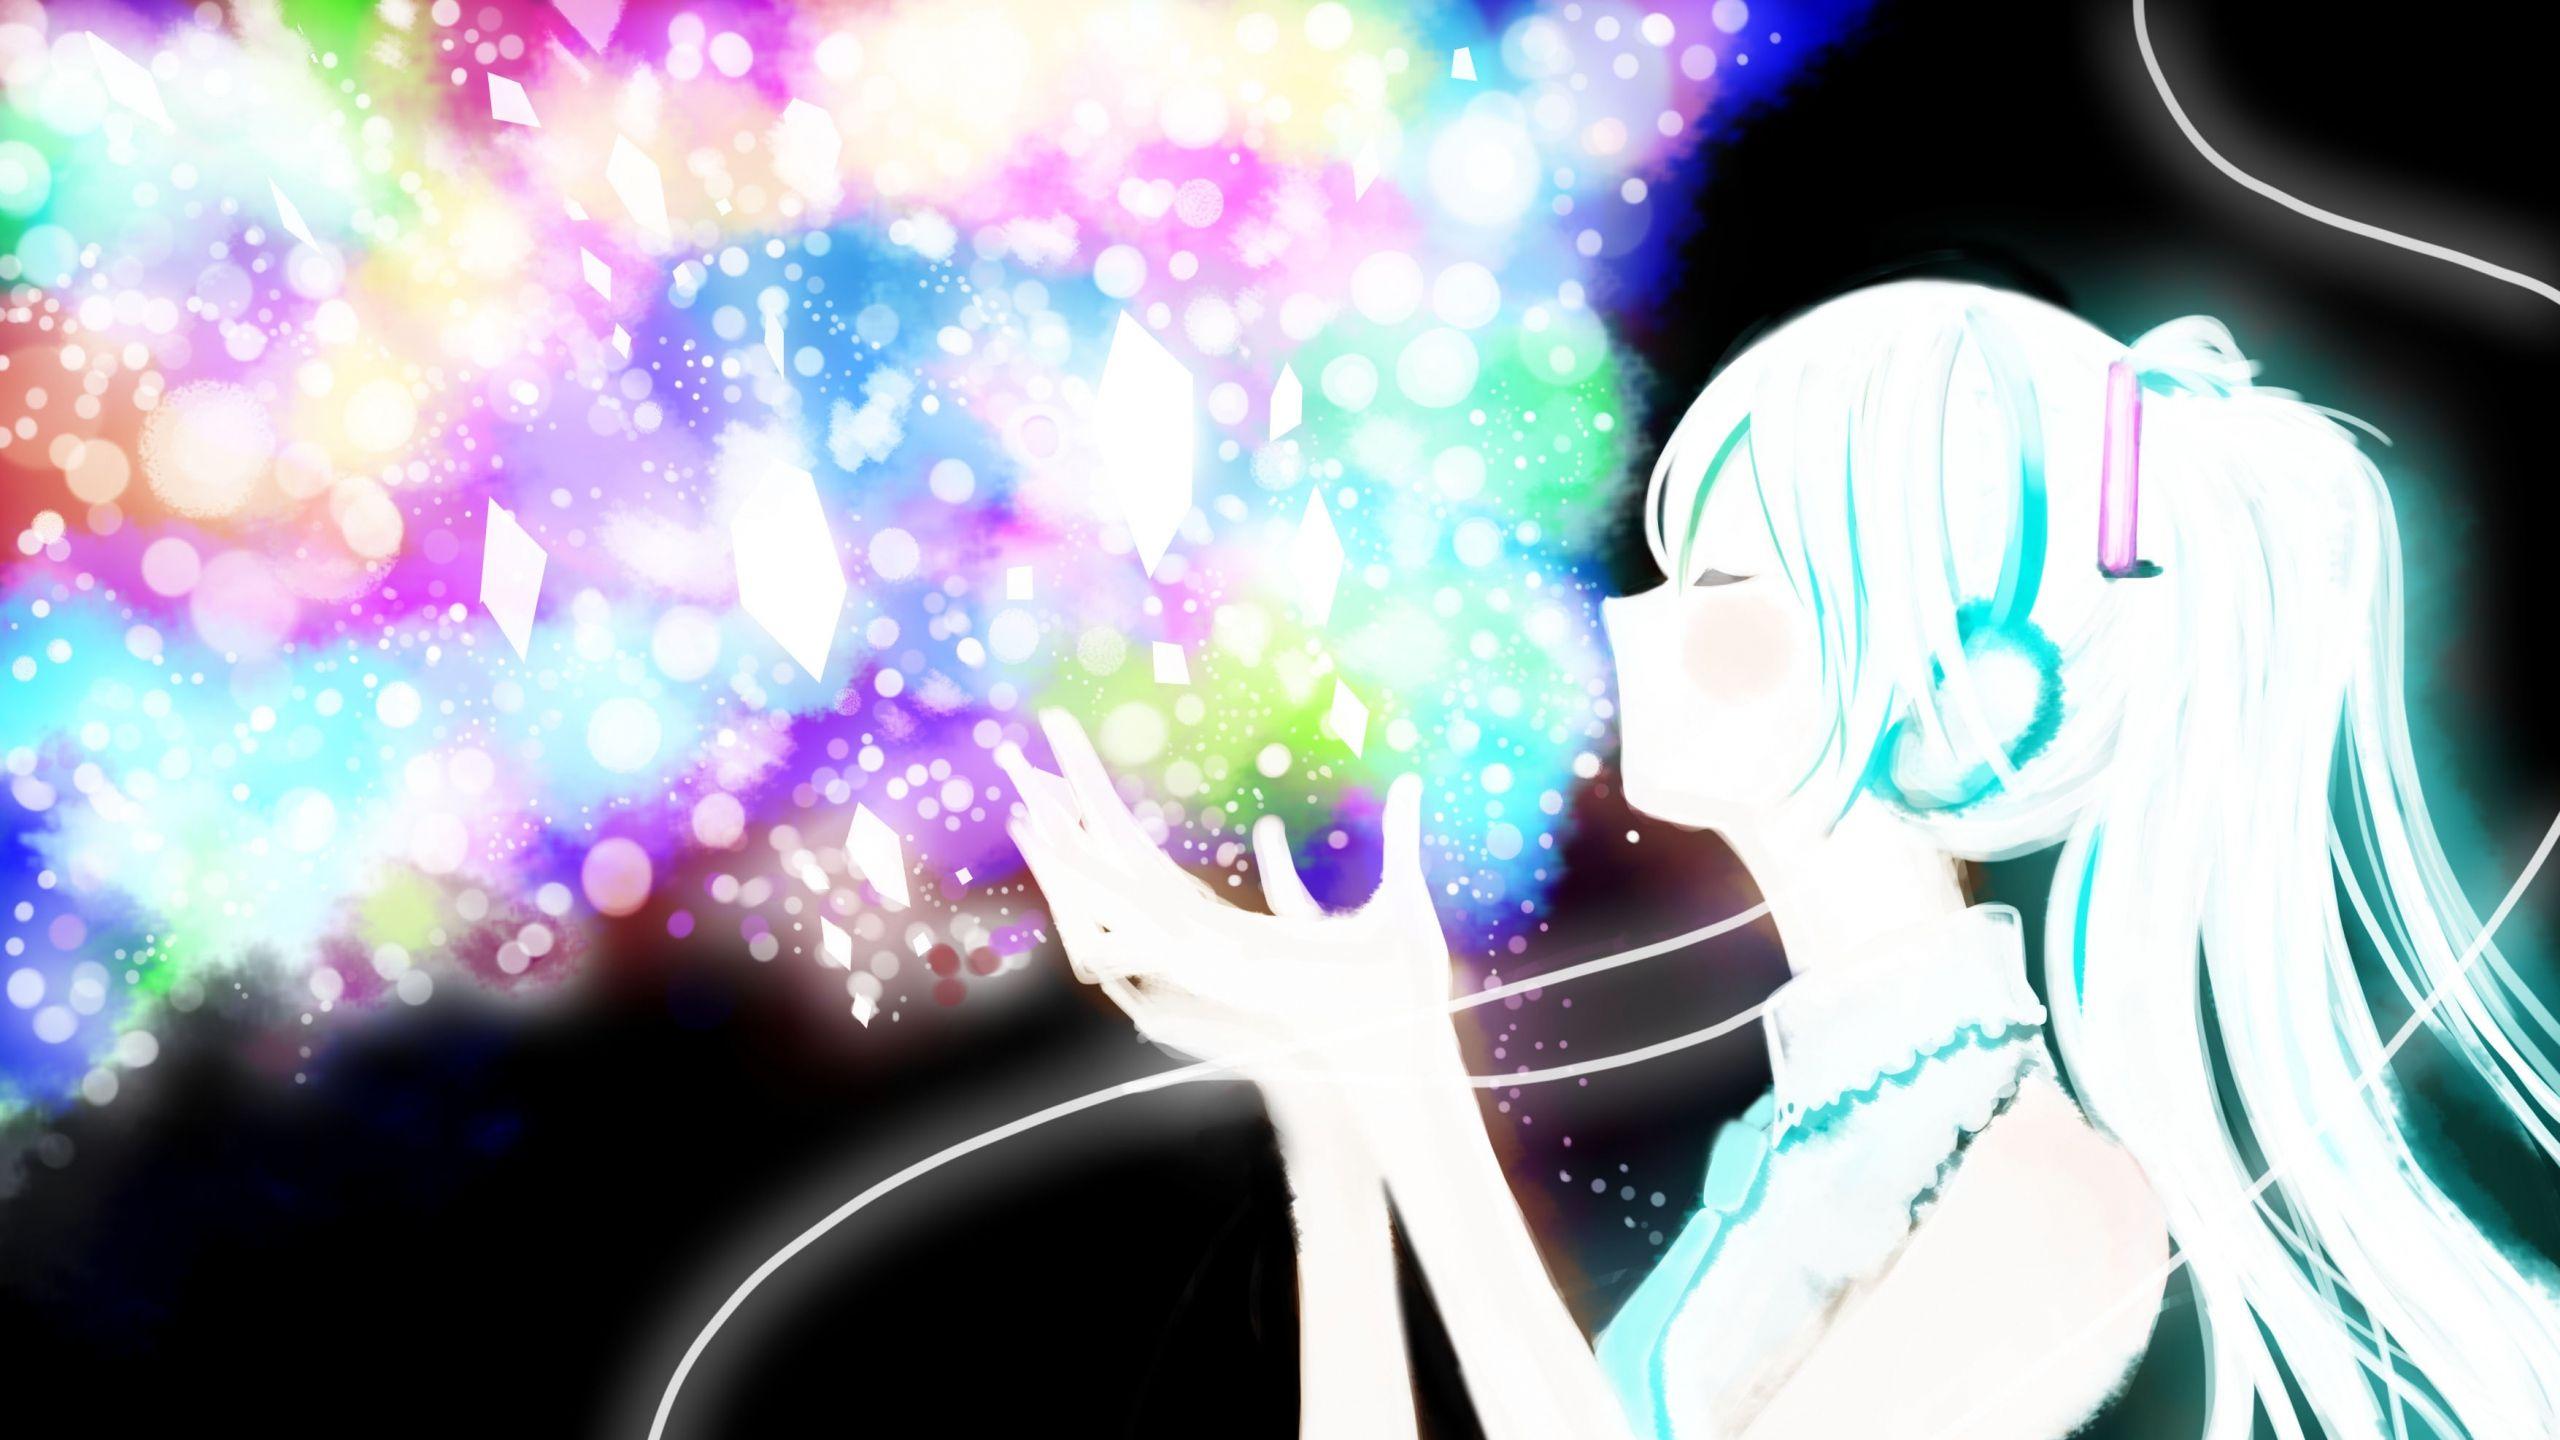 Anime Glitter Force Wallpaper